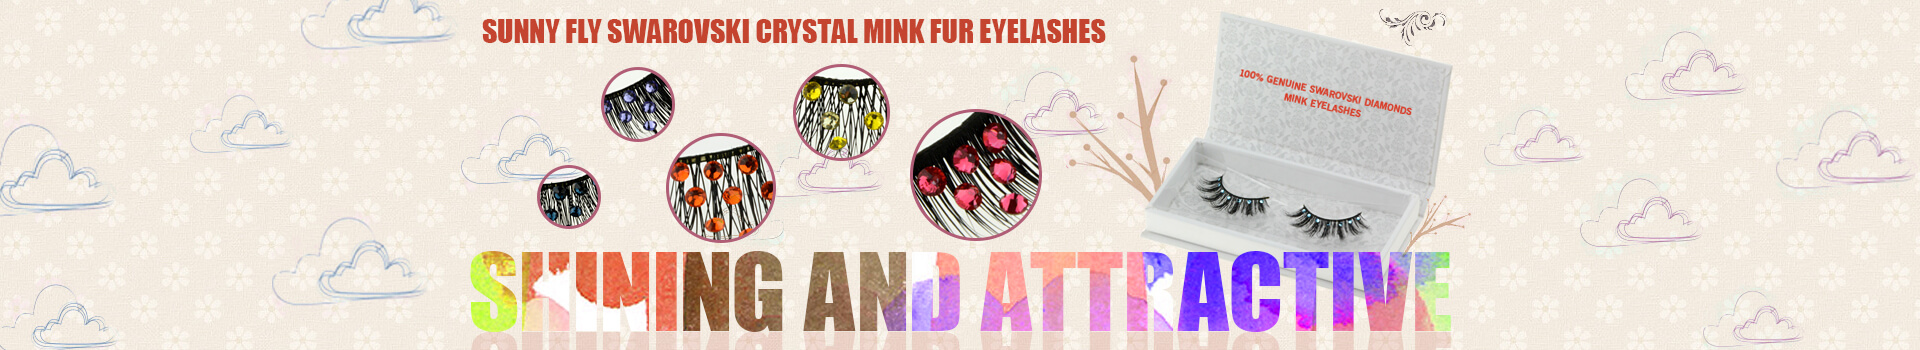 Swarovski Crystal Mink Fur Eyelashes MS42